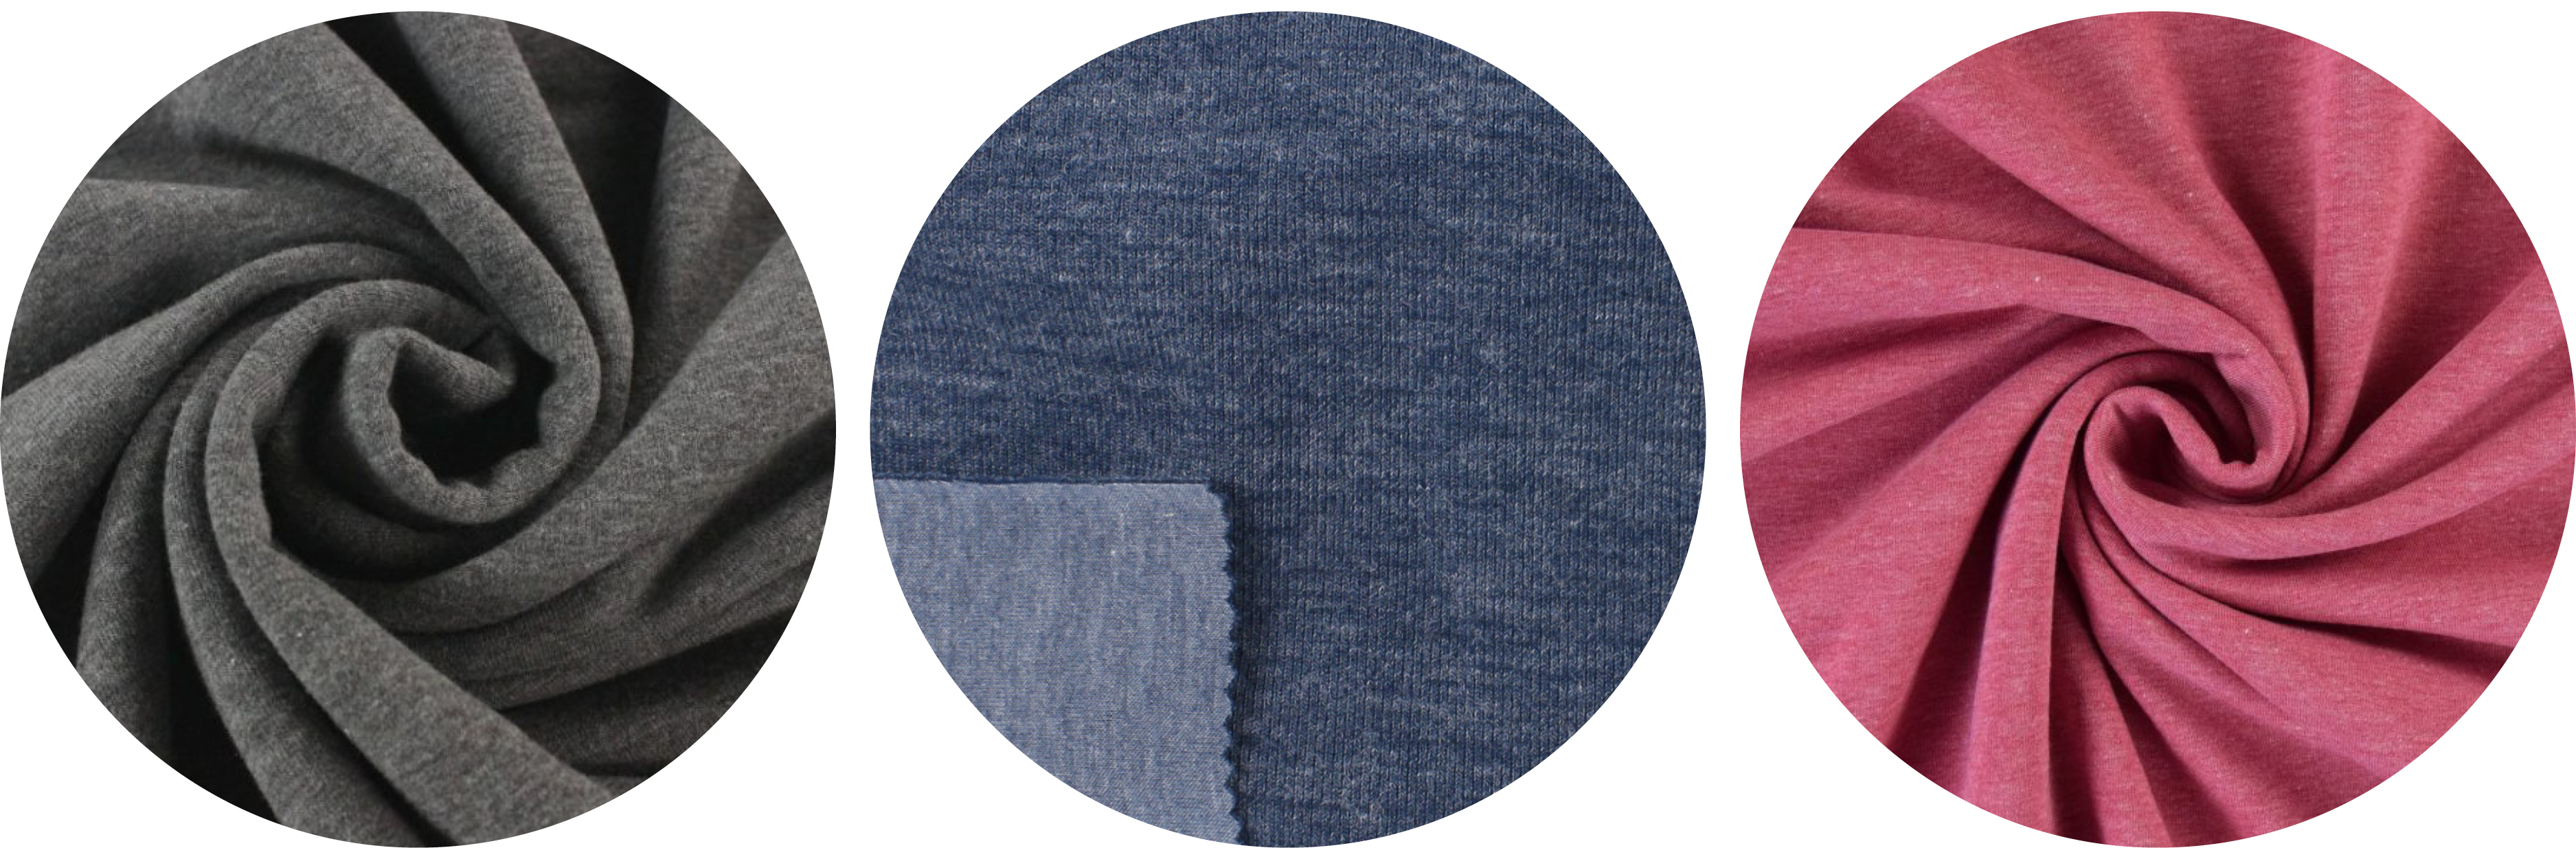 Tobin Sweater knit fabric ideas: solids